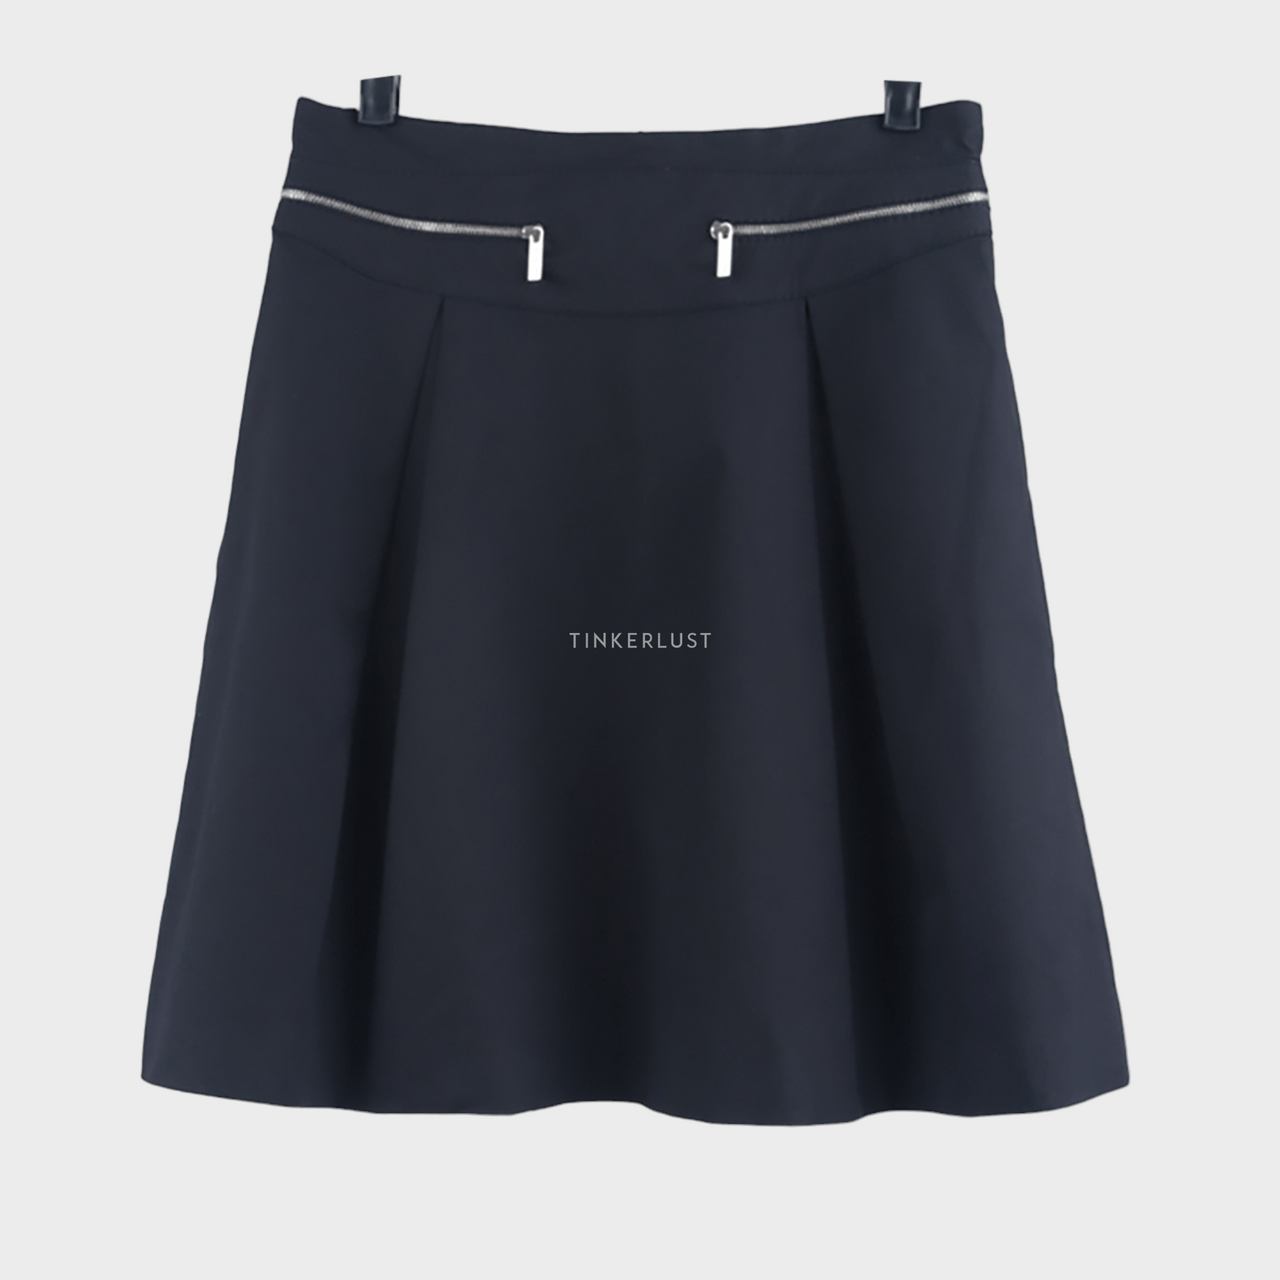 Karen Millen Black Mini Skirt